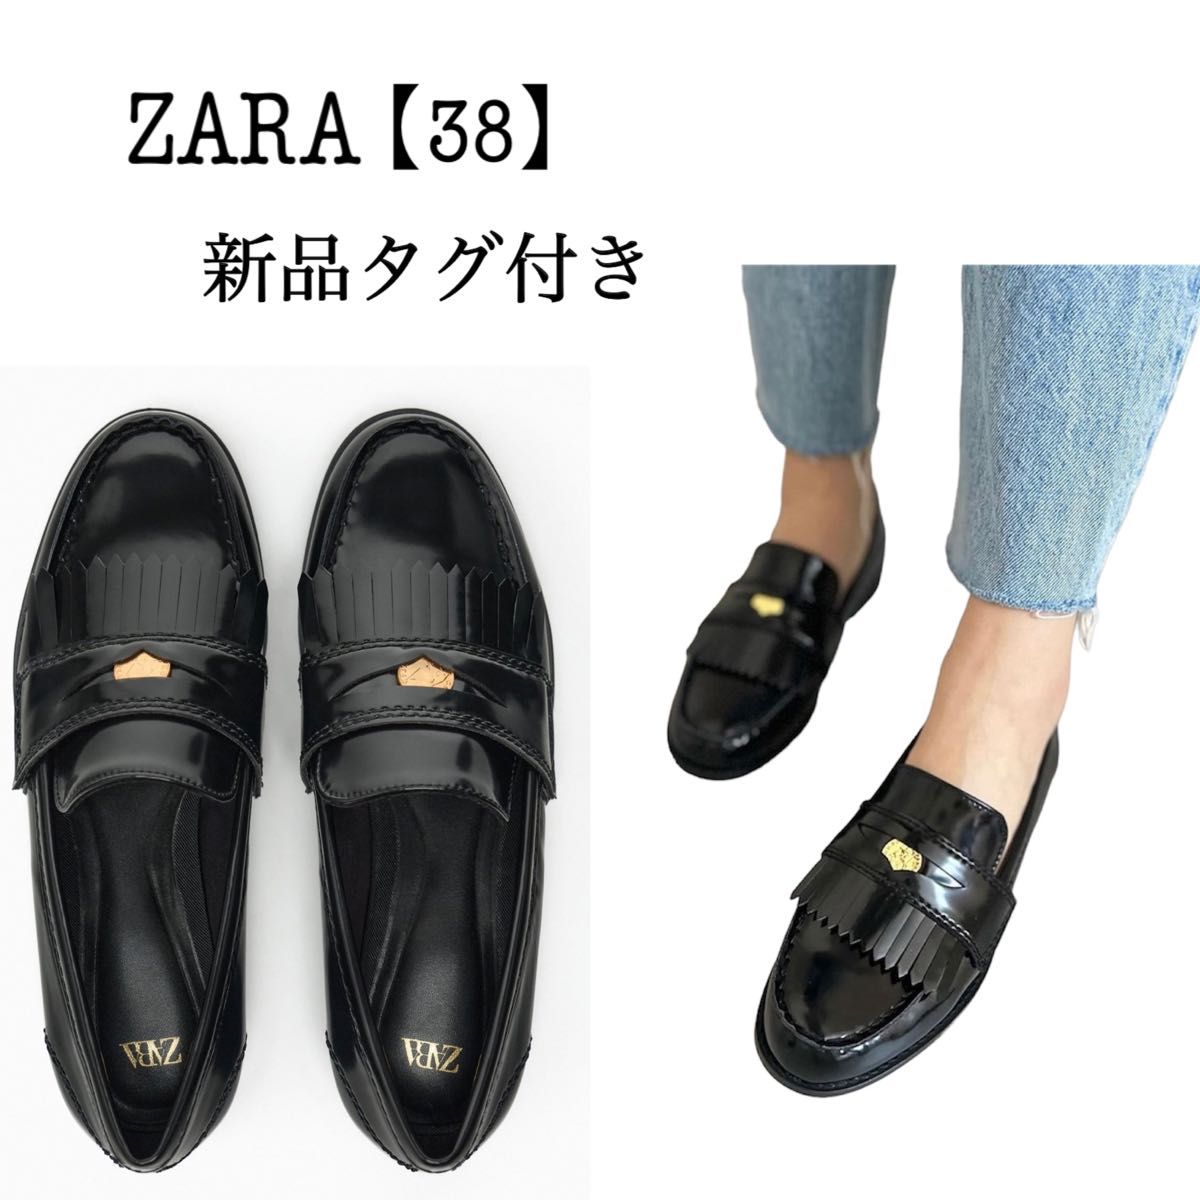 【新品】ZARA フラットローファー メタルディテール ブラック 黒